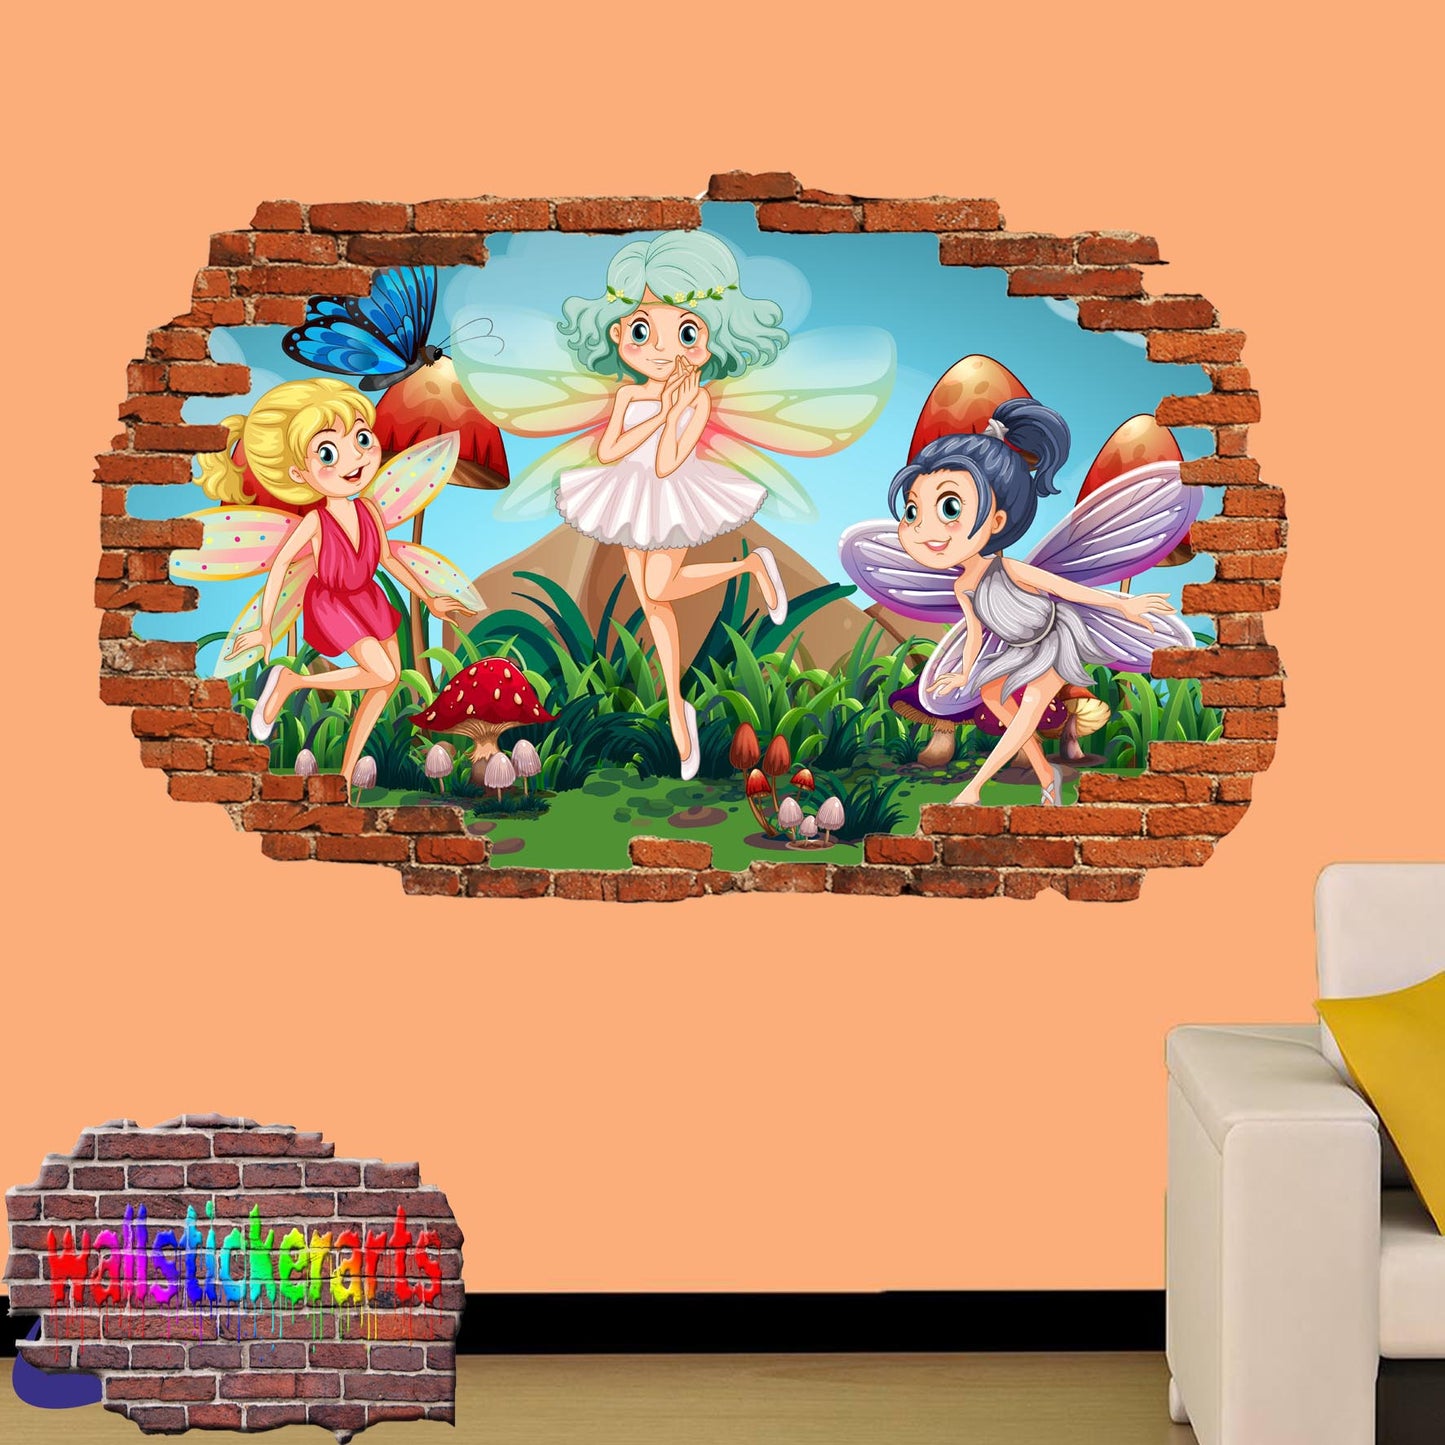 Little Cartoon Fairies 3d Art Wall Sticker Girls Room Nursery Decor Decal Mural XR4